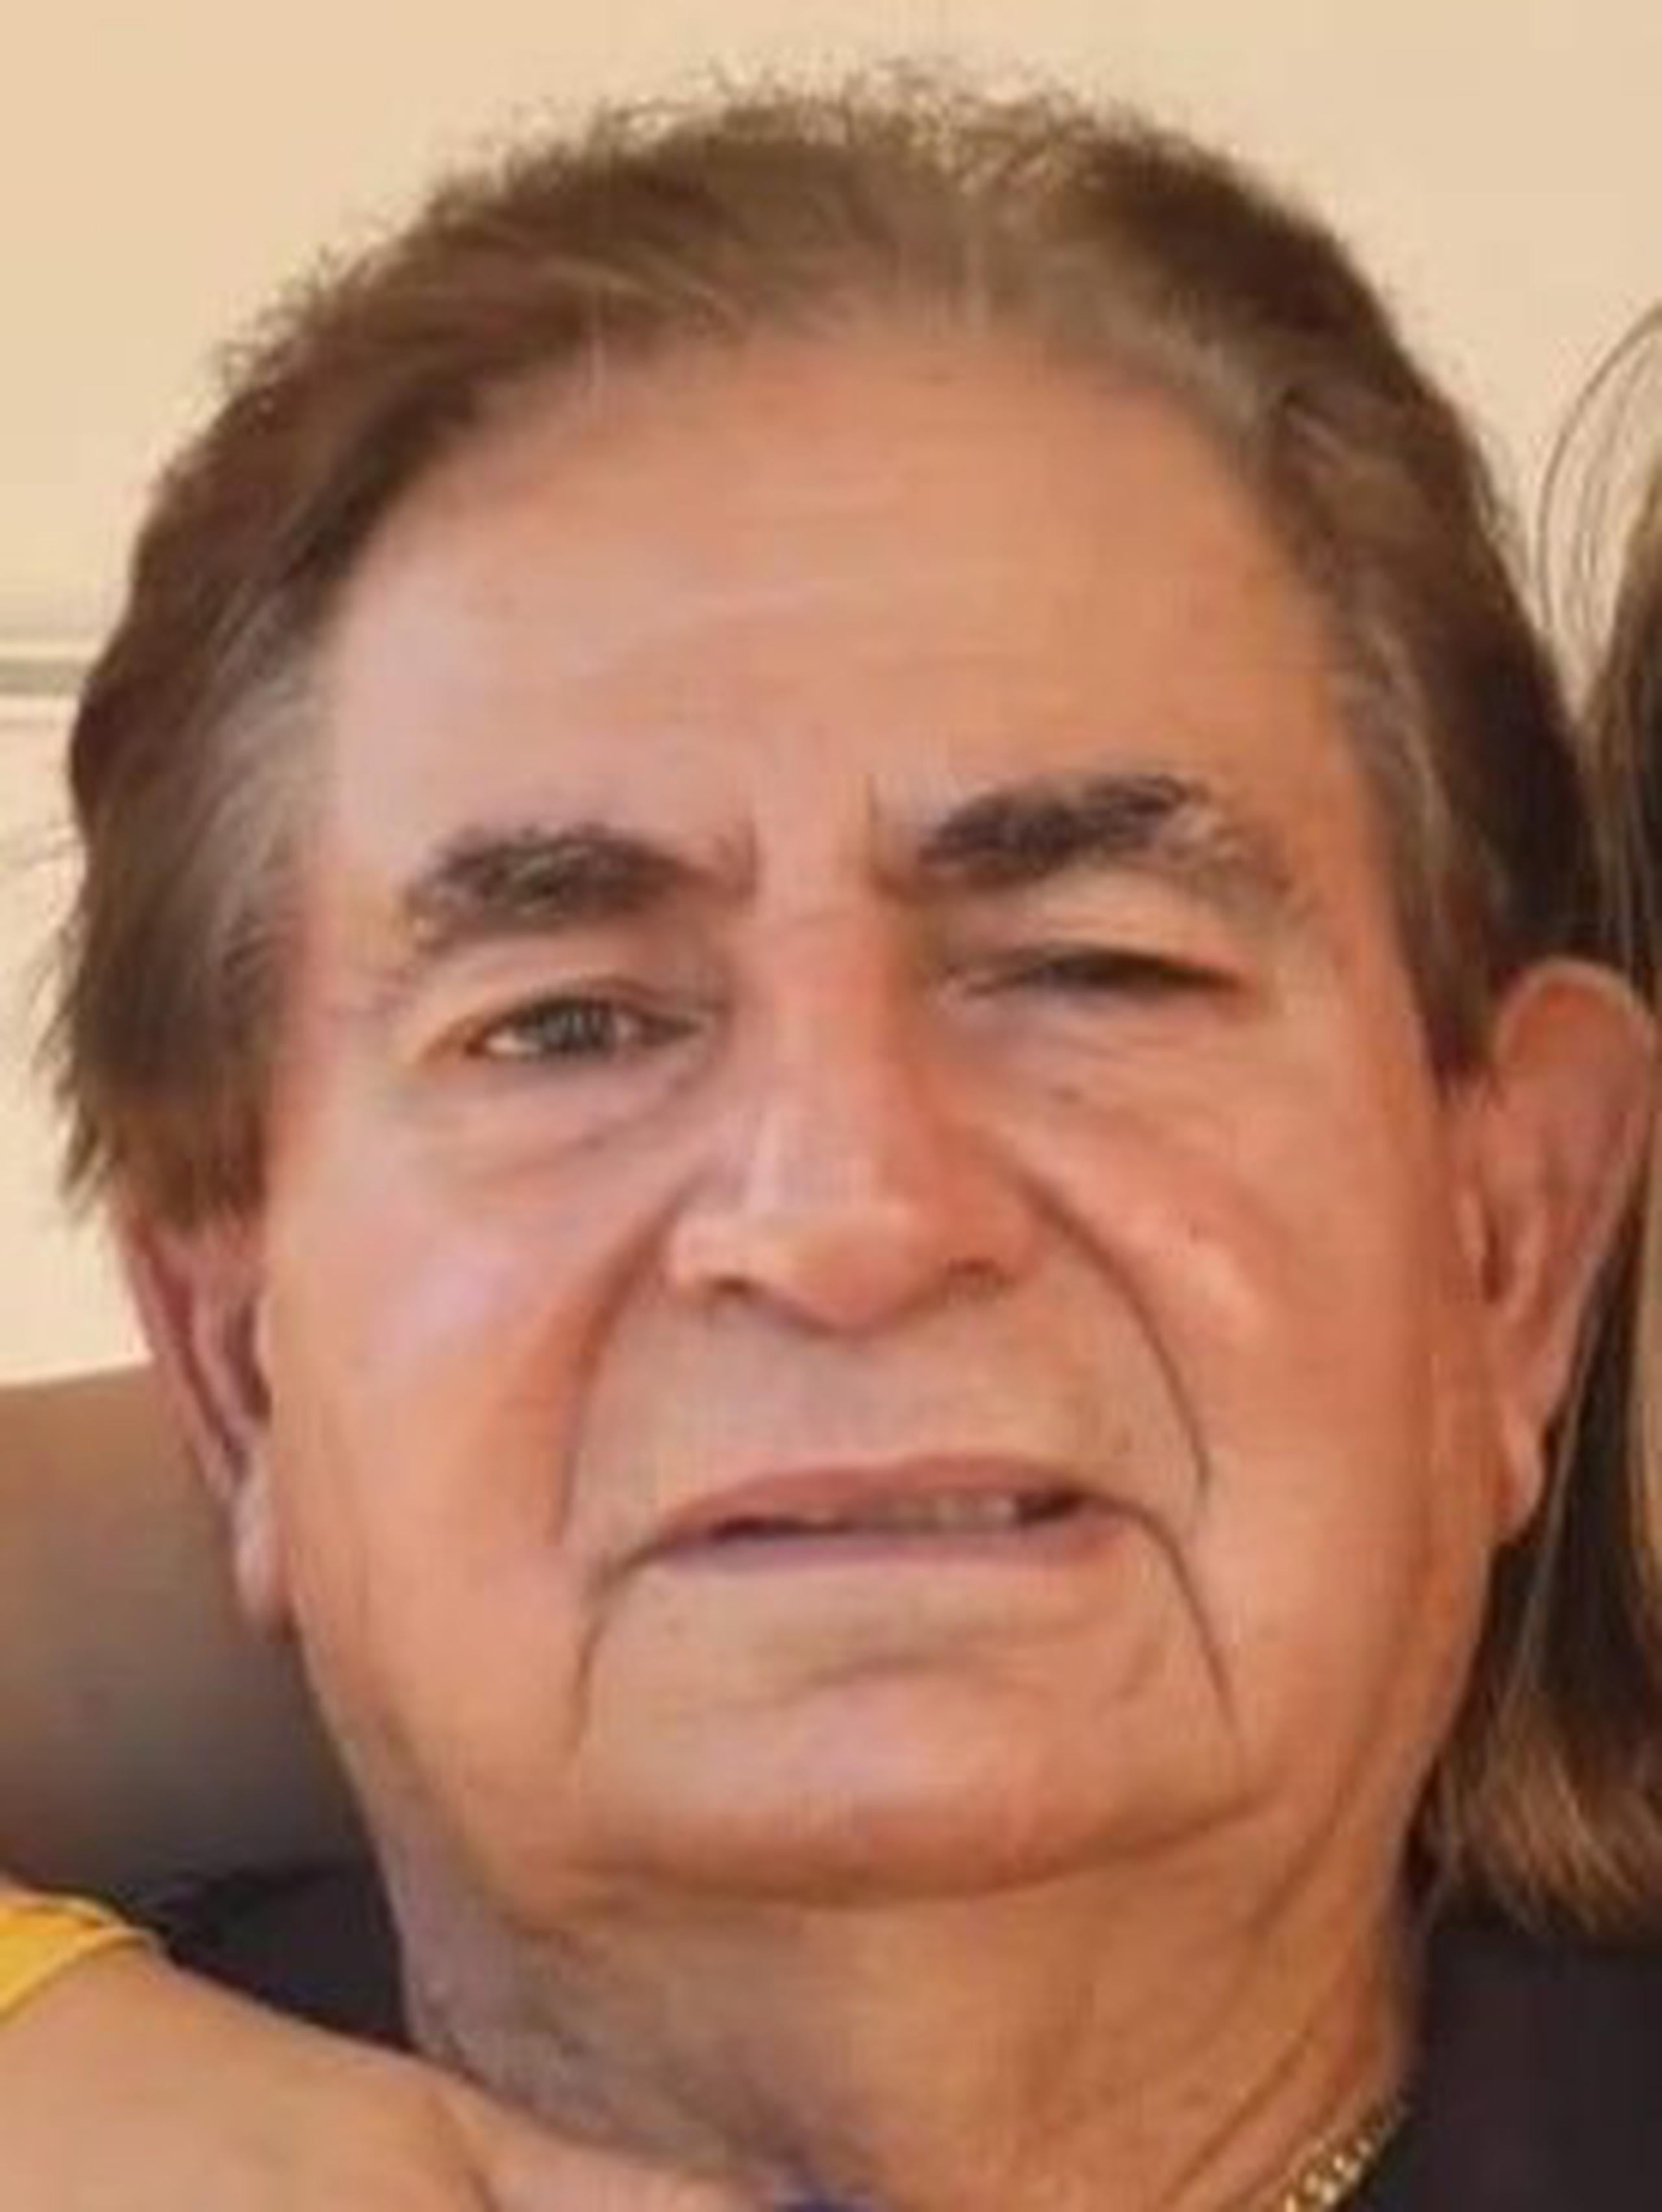 Las autoridades buscan a José Luis Del Moral Lebrón de 74 años, quien se encuentra desaparecido desde la mañana de ayer, domingo, de si residencia en la urbanización Villa Hilda, en Yabucoa.